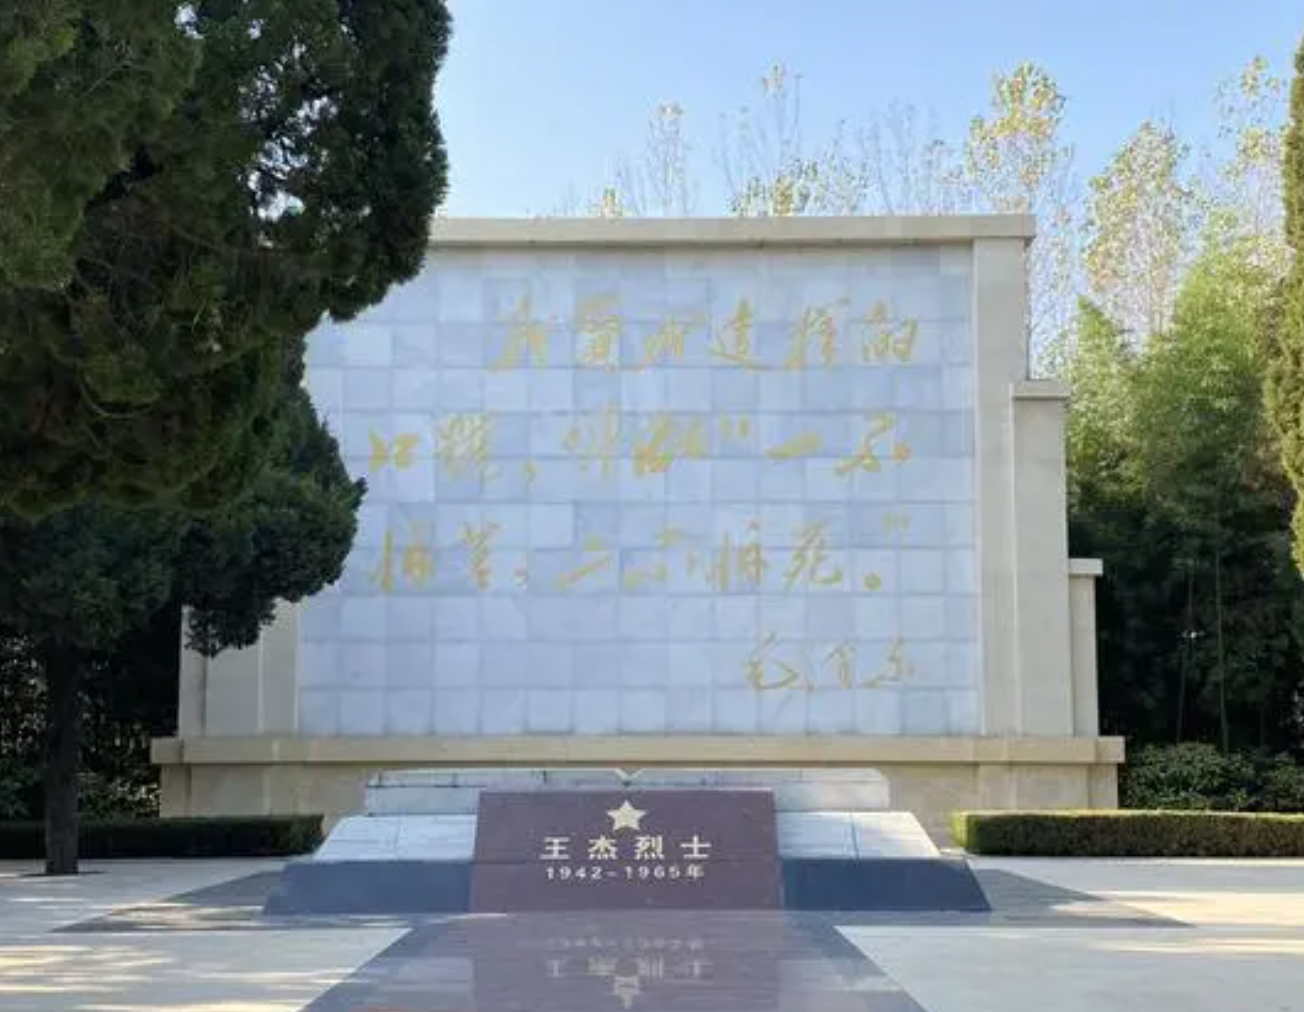 邳州王杰纪念馆,是为了纪念伟大的共产主义战士王杰而建立的